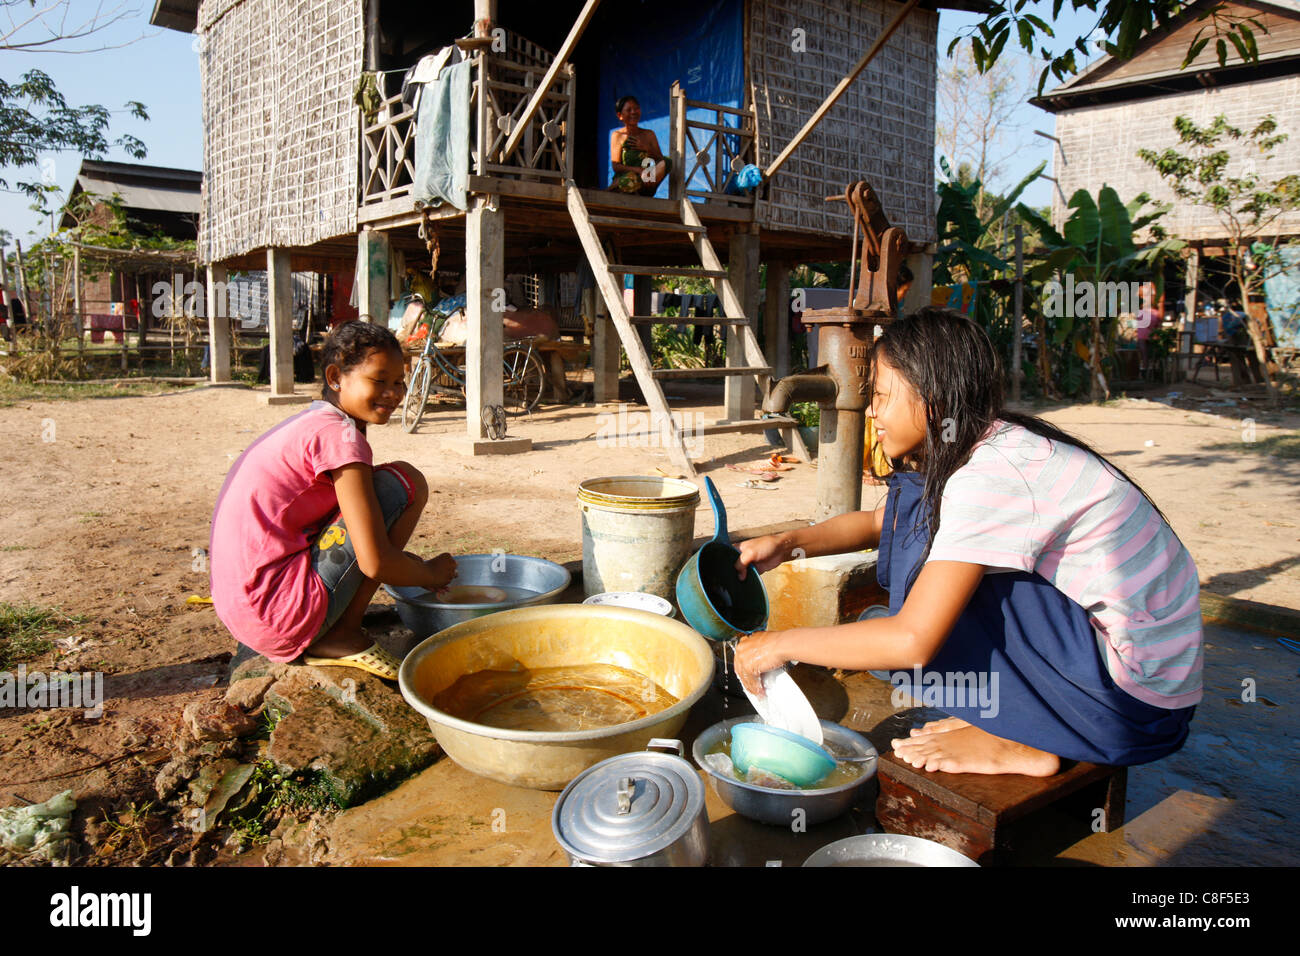 Lave-ustensiles de ménage, partie de la vie quotidienne dans un village du Cambodge, Siem Reap, Cambodge, Indochine, Asie du sud-est Banque D'Images